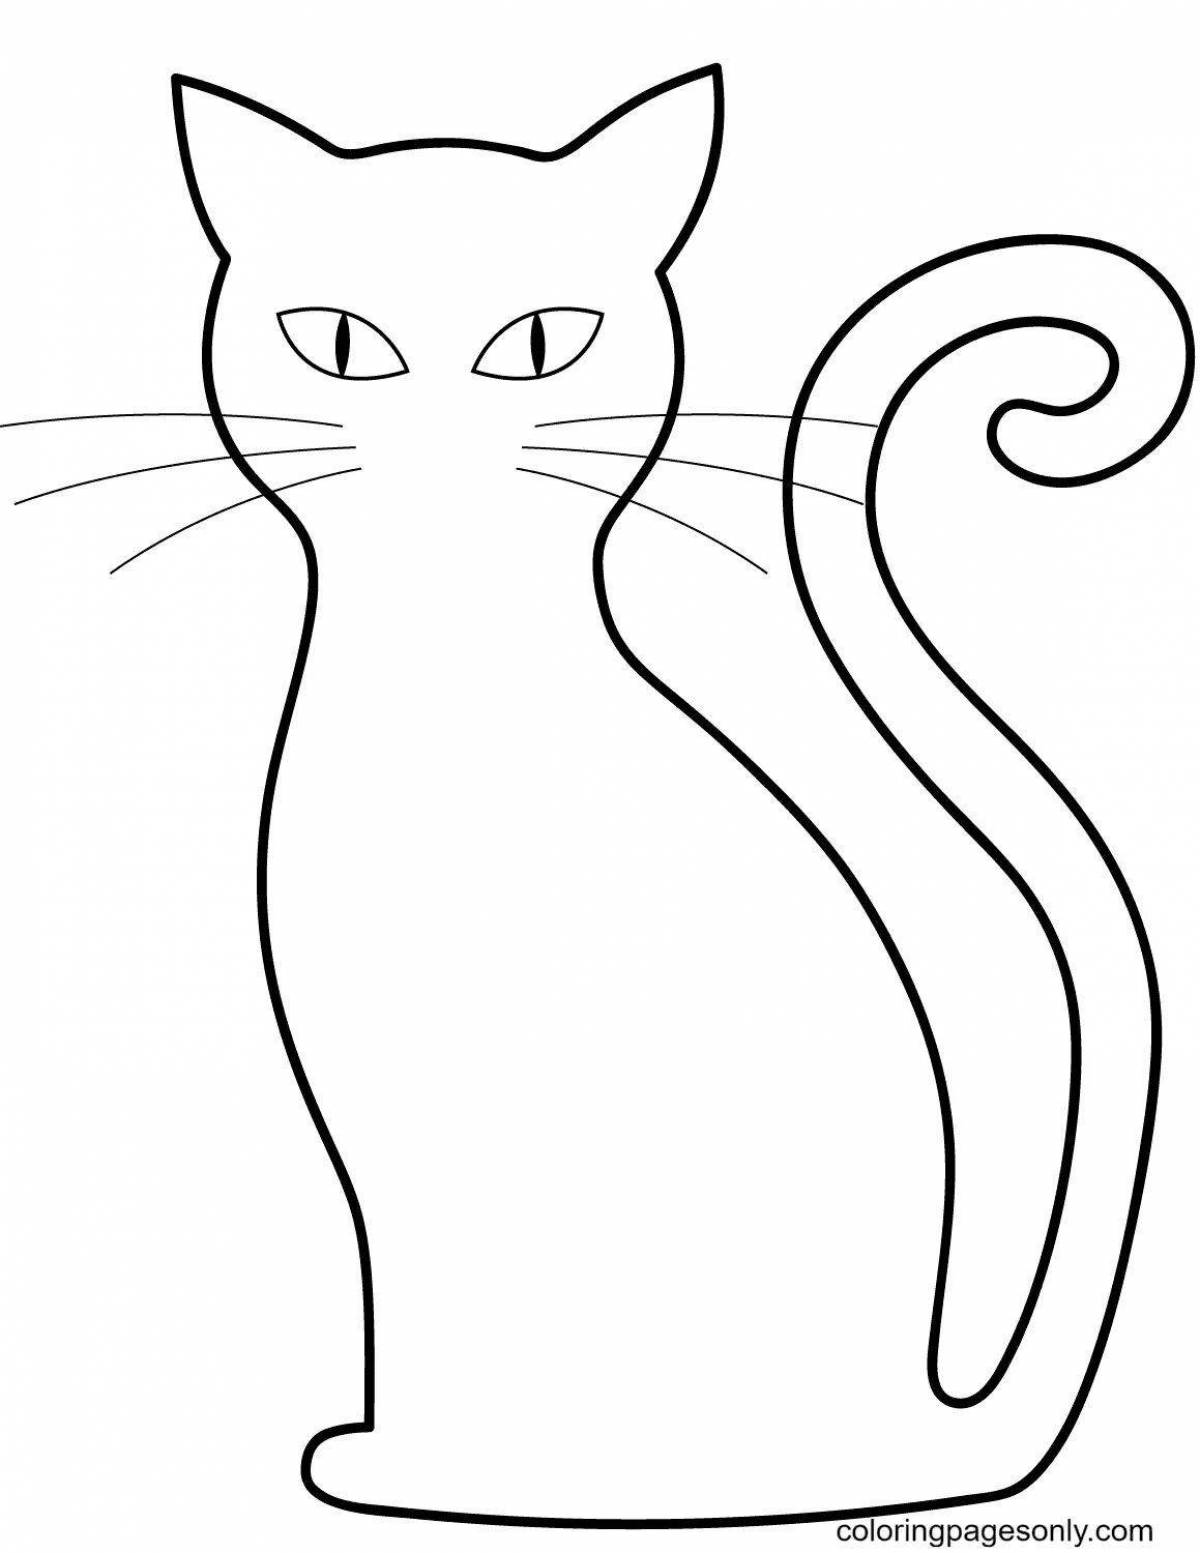 Раскраска грациозная сидящая кошка